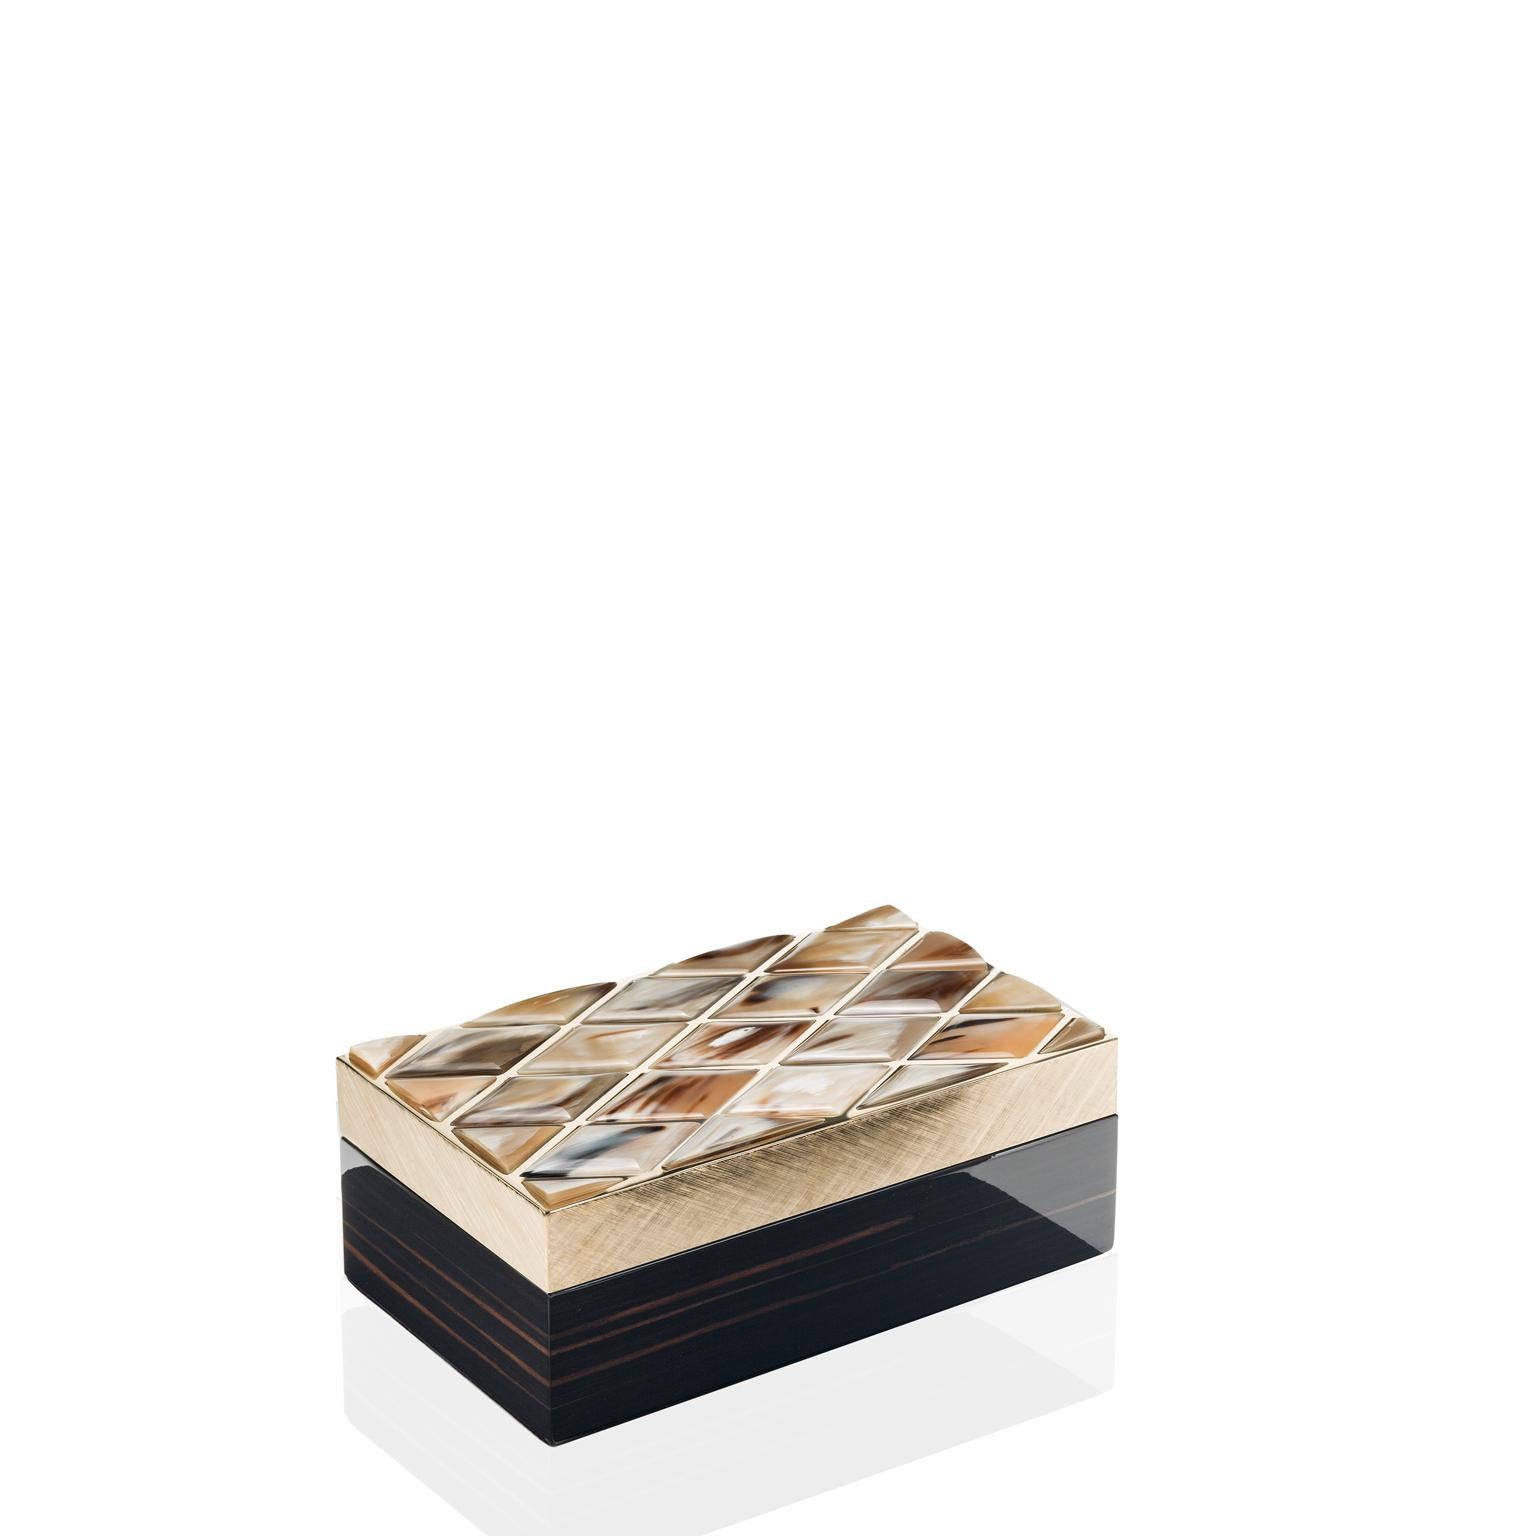 Unsere Fedora-Box wurde entwickelt, um Ihre wertvollsten Schmuckstücke geordnet und sicher aufzubewahren. Sie ist das perfekte Zuhause für alle Ihre Schätze und Andenken. Die aus glänzendem Ebenholz gefertigte Schatulle zeichnet sich durch einen